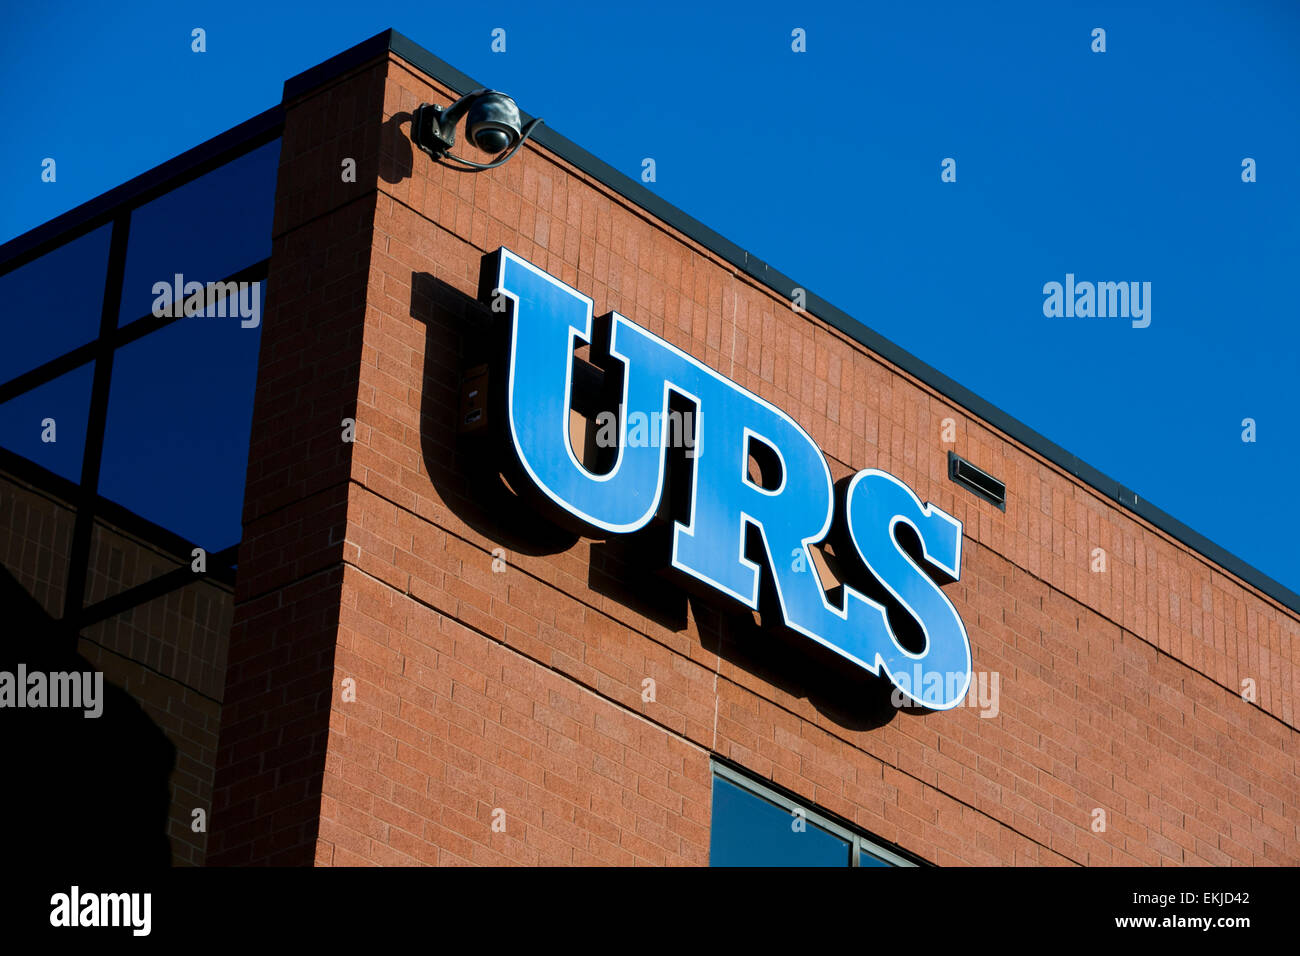 Un logo affiche à l'extérieur de l'extérieur d'un bâtiment occupé par URS. Banque D'Images